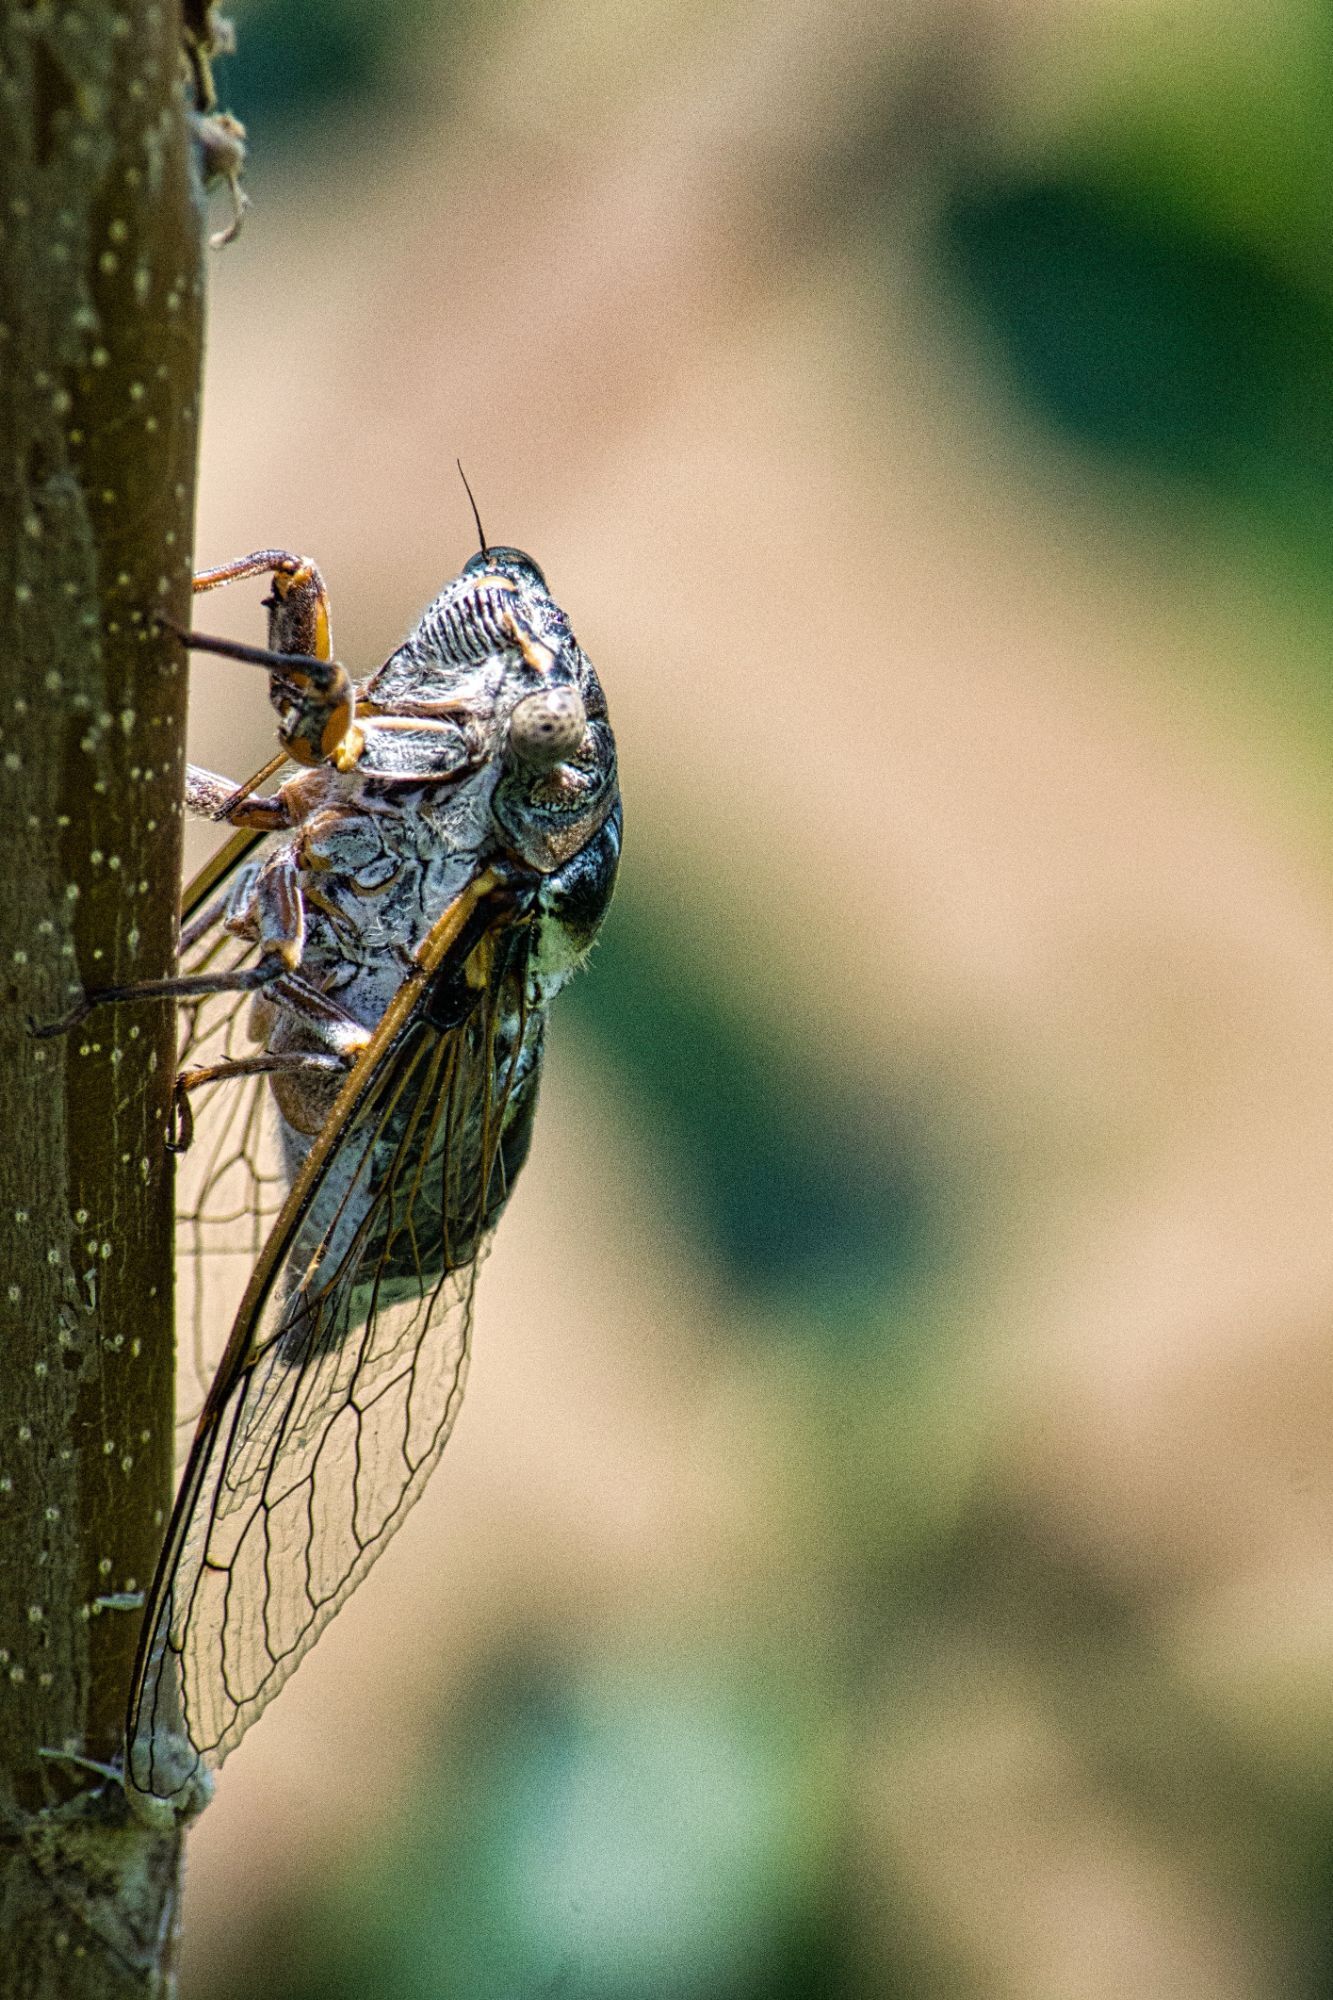 Cicada photography by Brecht De Ruyte